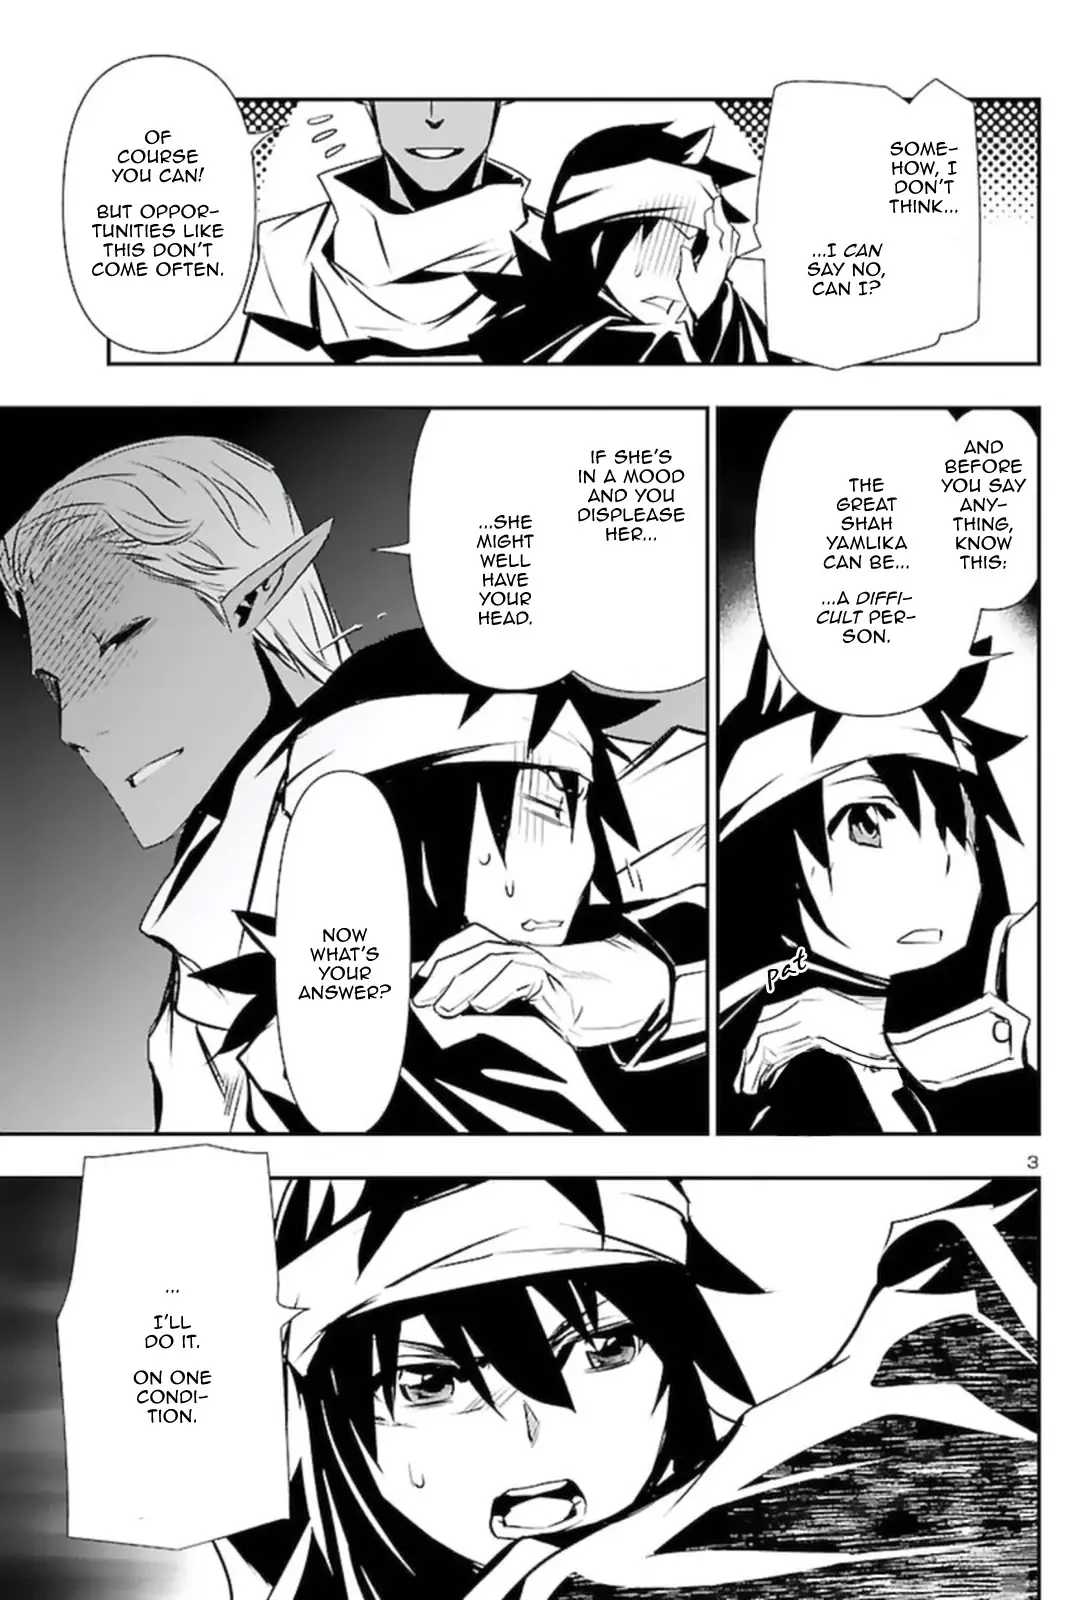 Shinju no Nectar - 57 page 3